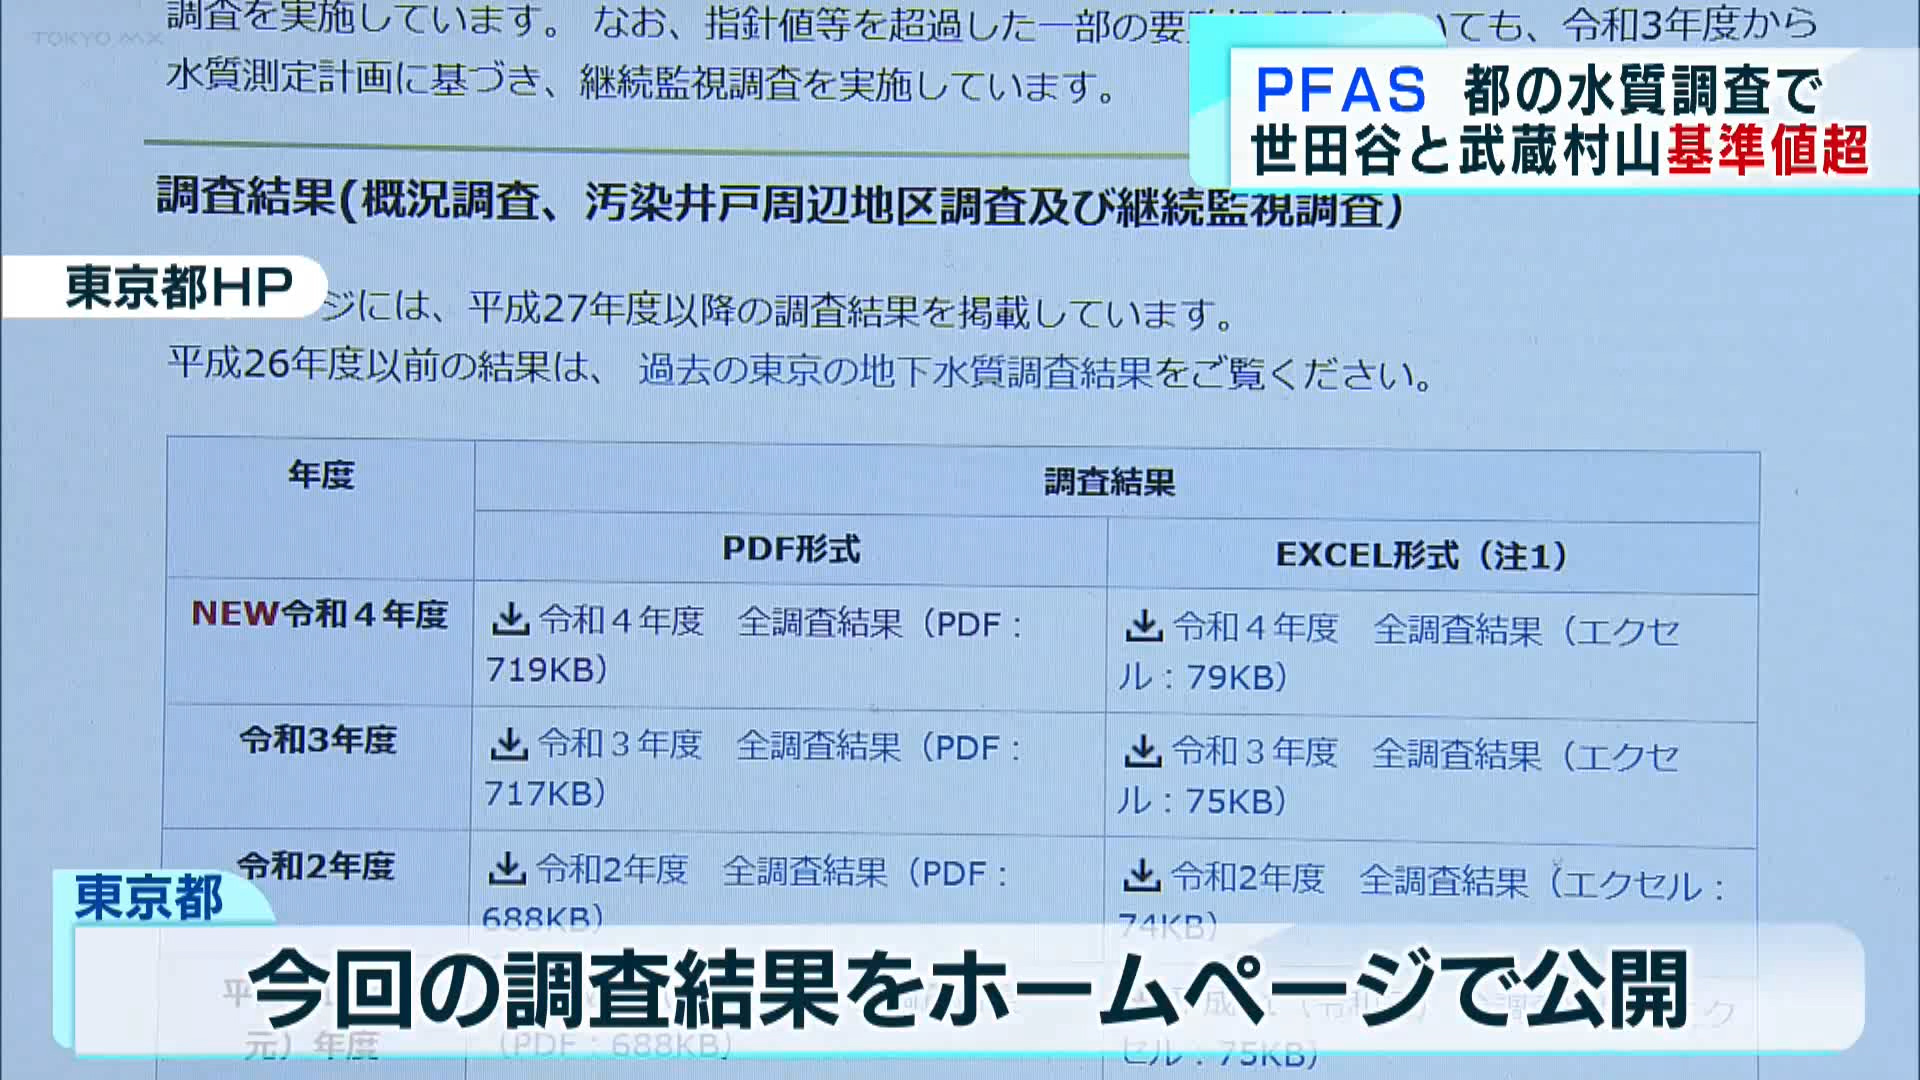 化学物質「PFAS」が都内で新たに検出されました。東京都による地下水の調査で、新たに世田谷区と武蔵村山市で国の目標値を上回る値が検出されたことが分かりました。